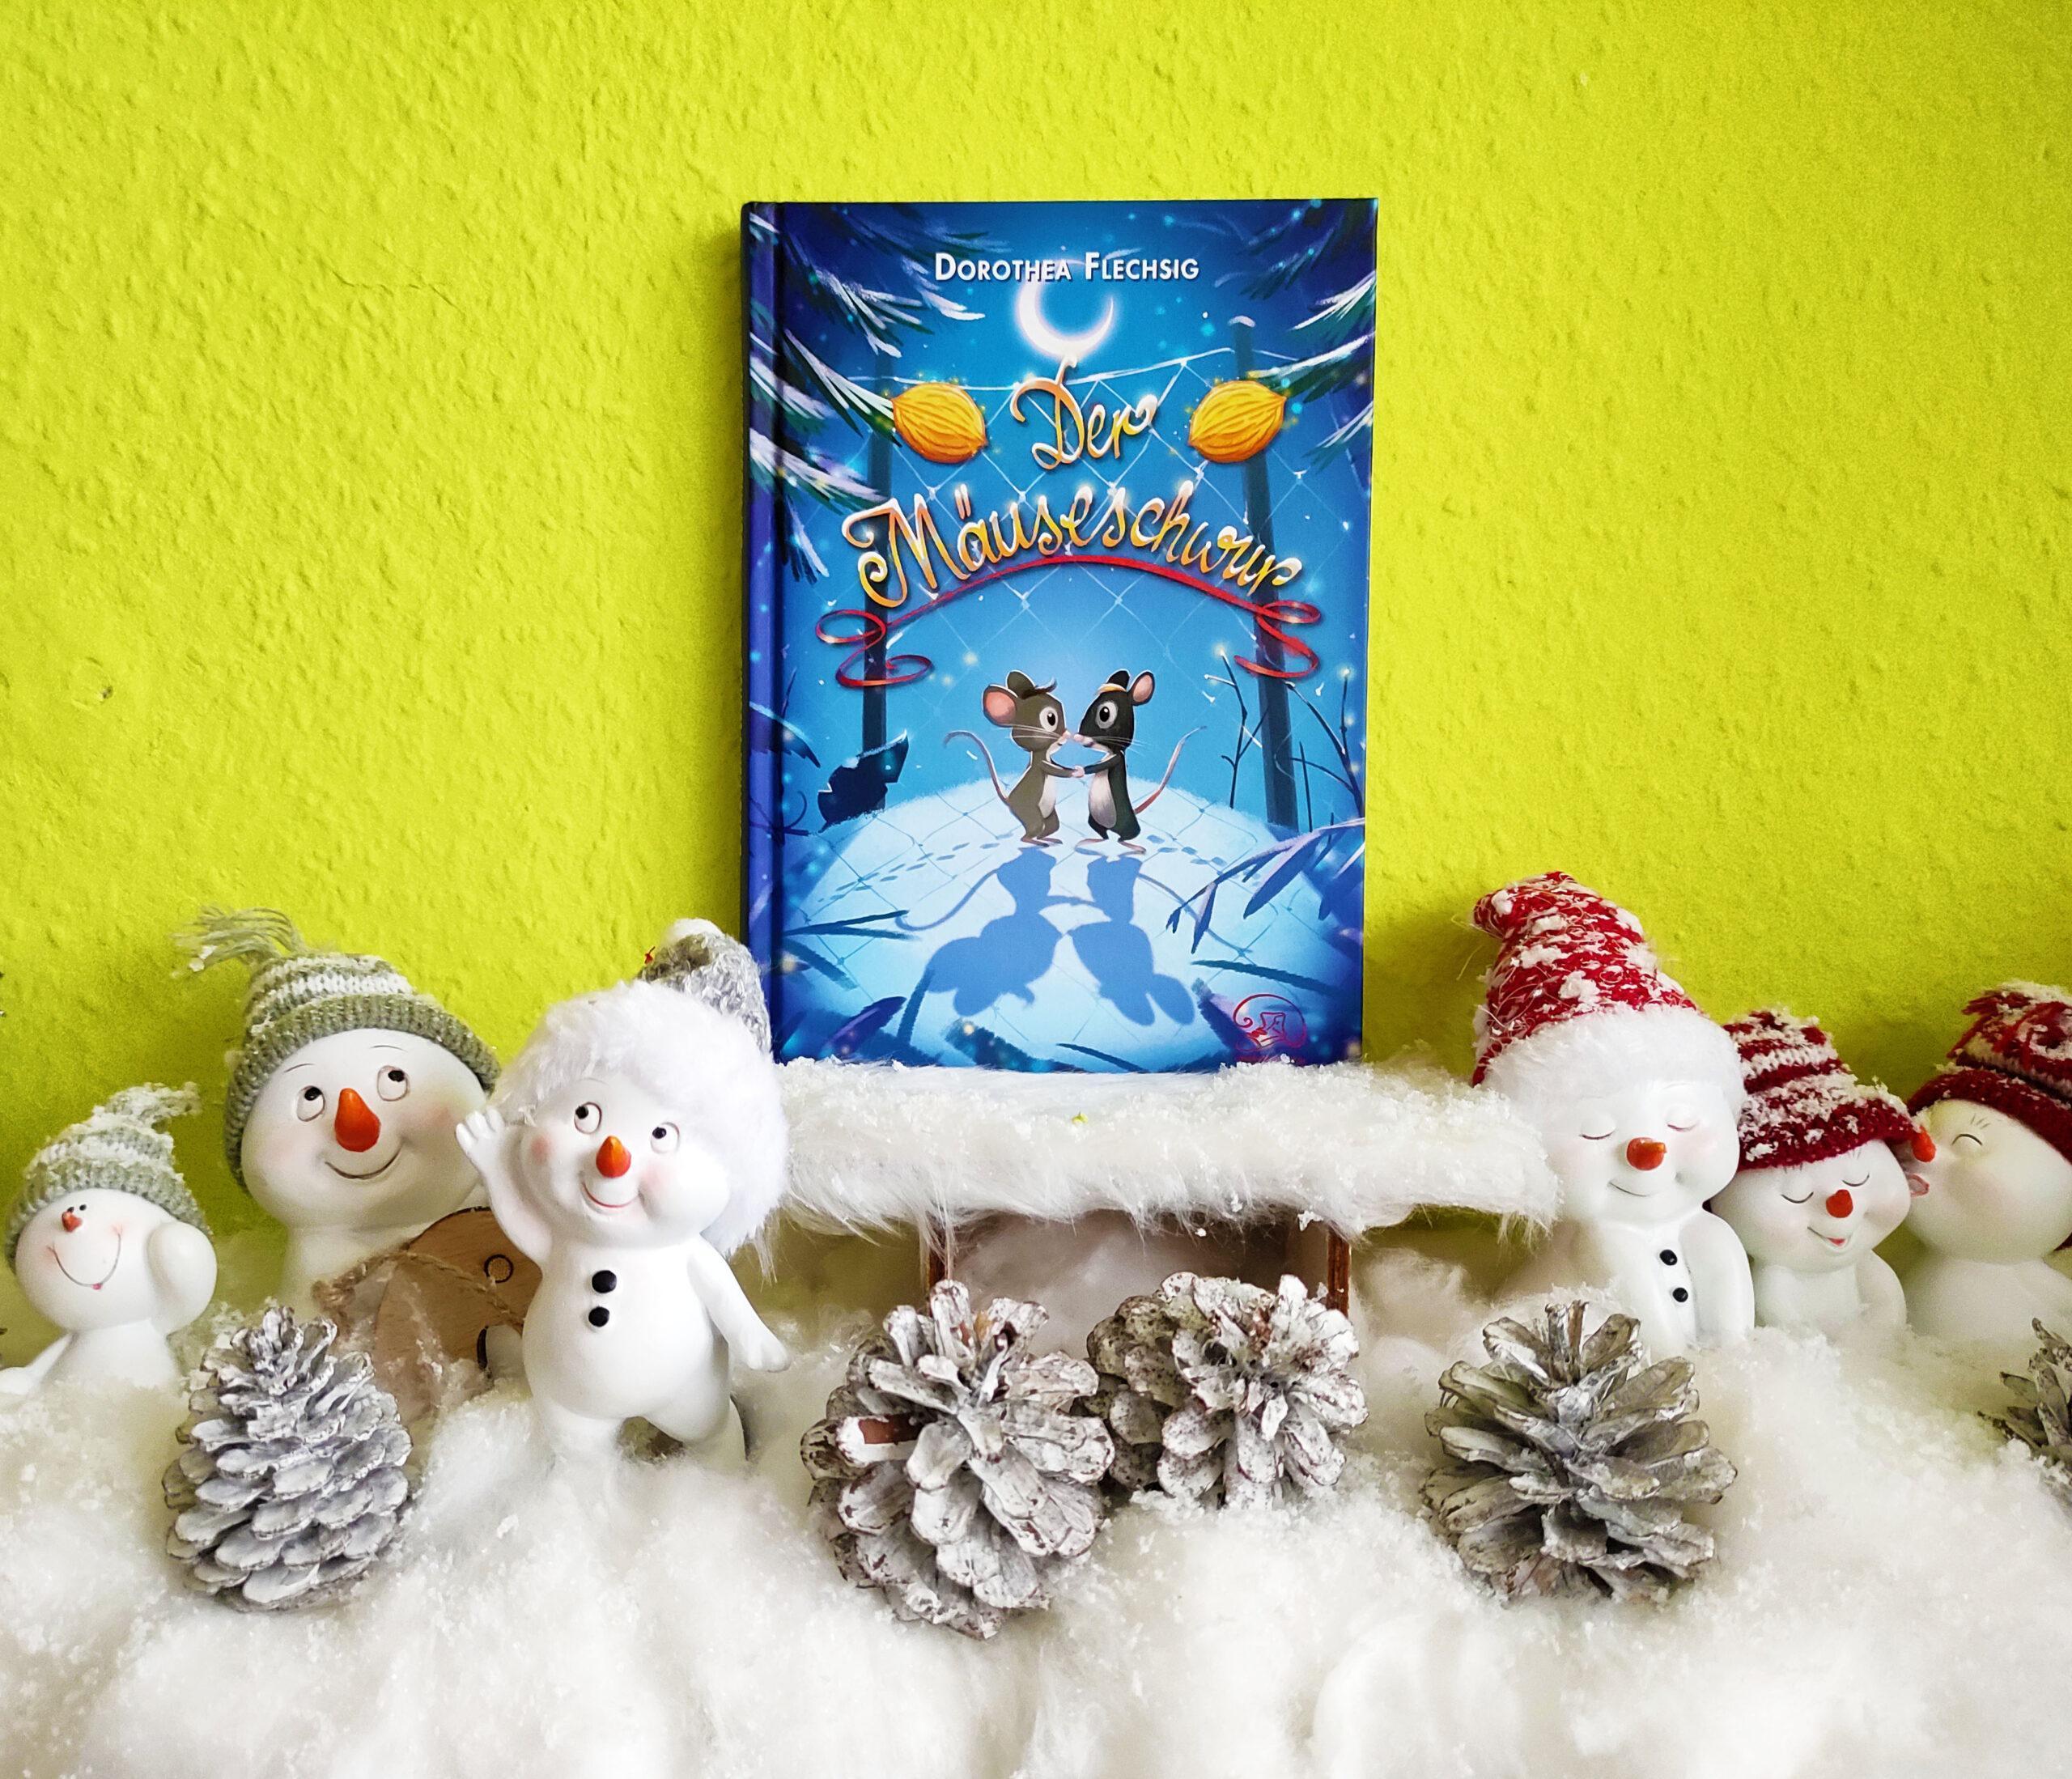 Das Buch Der Mäuseschwur steht auf einem Schlitten, umringt von Schneemännern, Tannenzapfen und Watte.